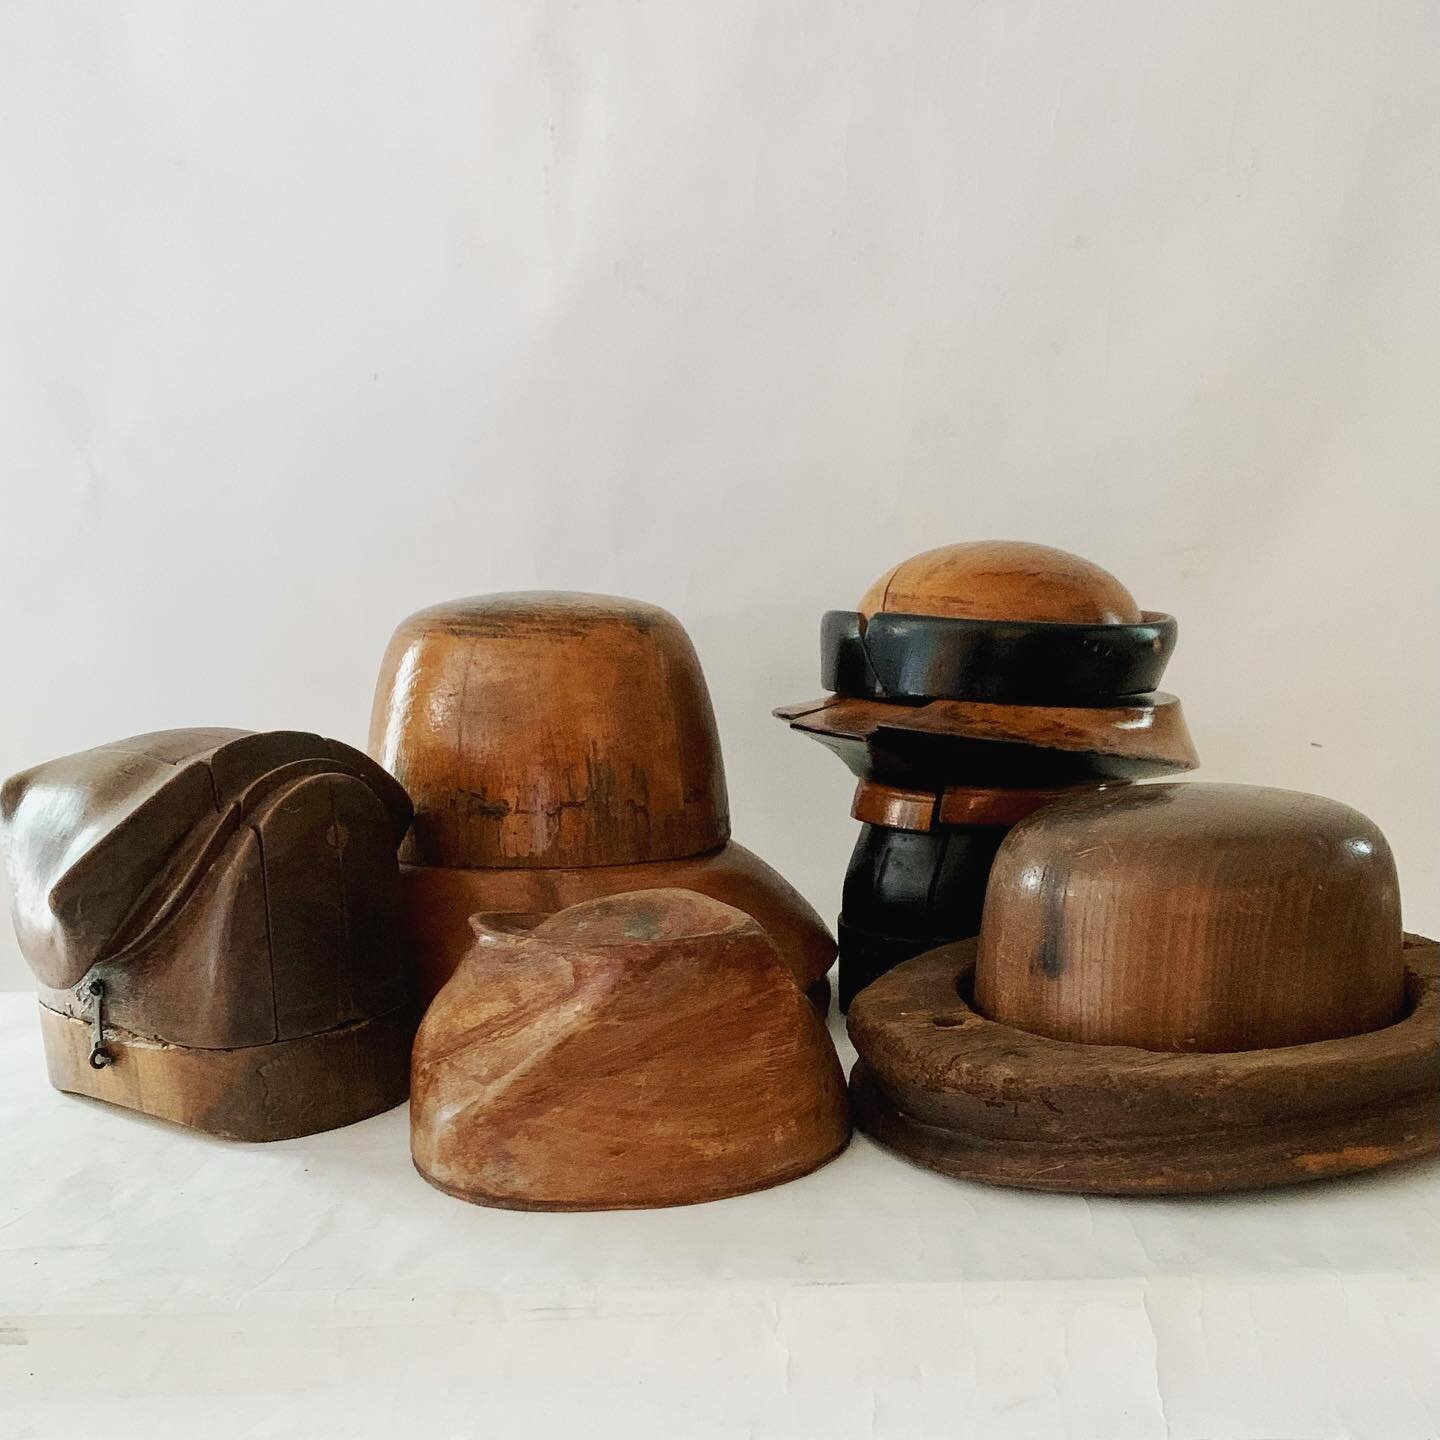 A stylish vintage wooden hat block collection $68-115.00each #fashionista #hatblocks #interiors #millinery #shelfiedecor #sculptural #dmforinq